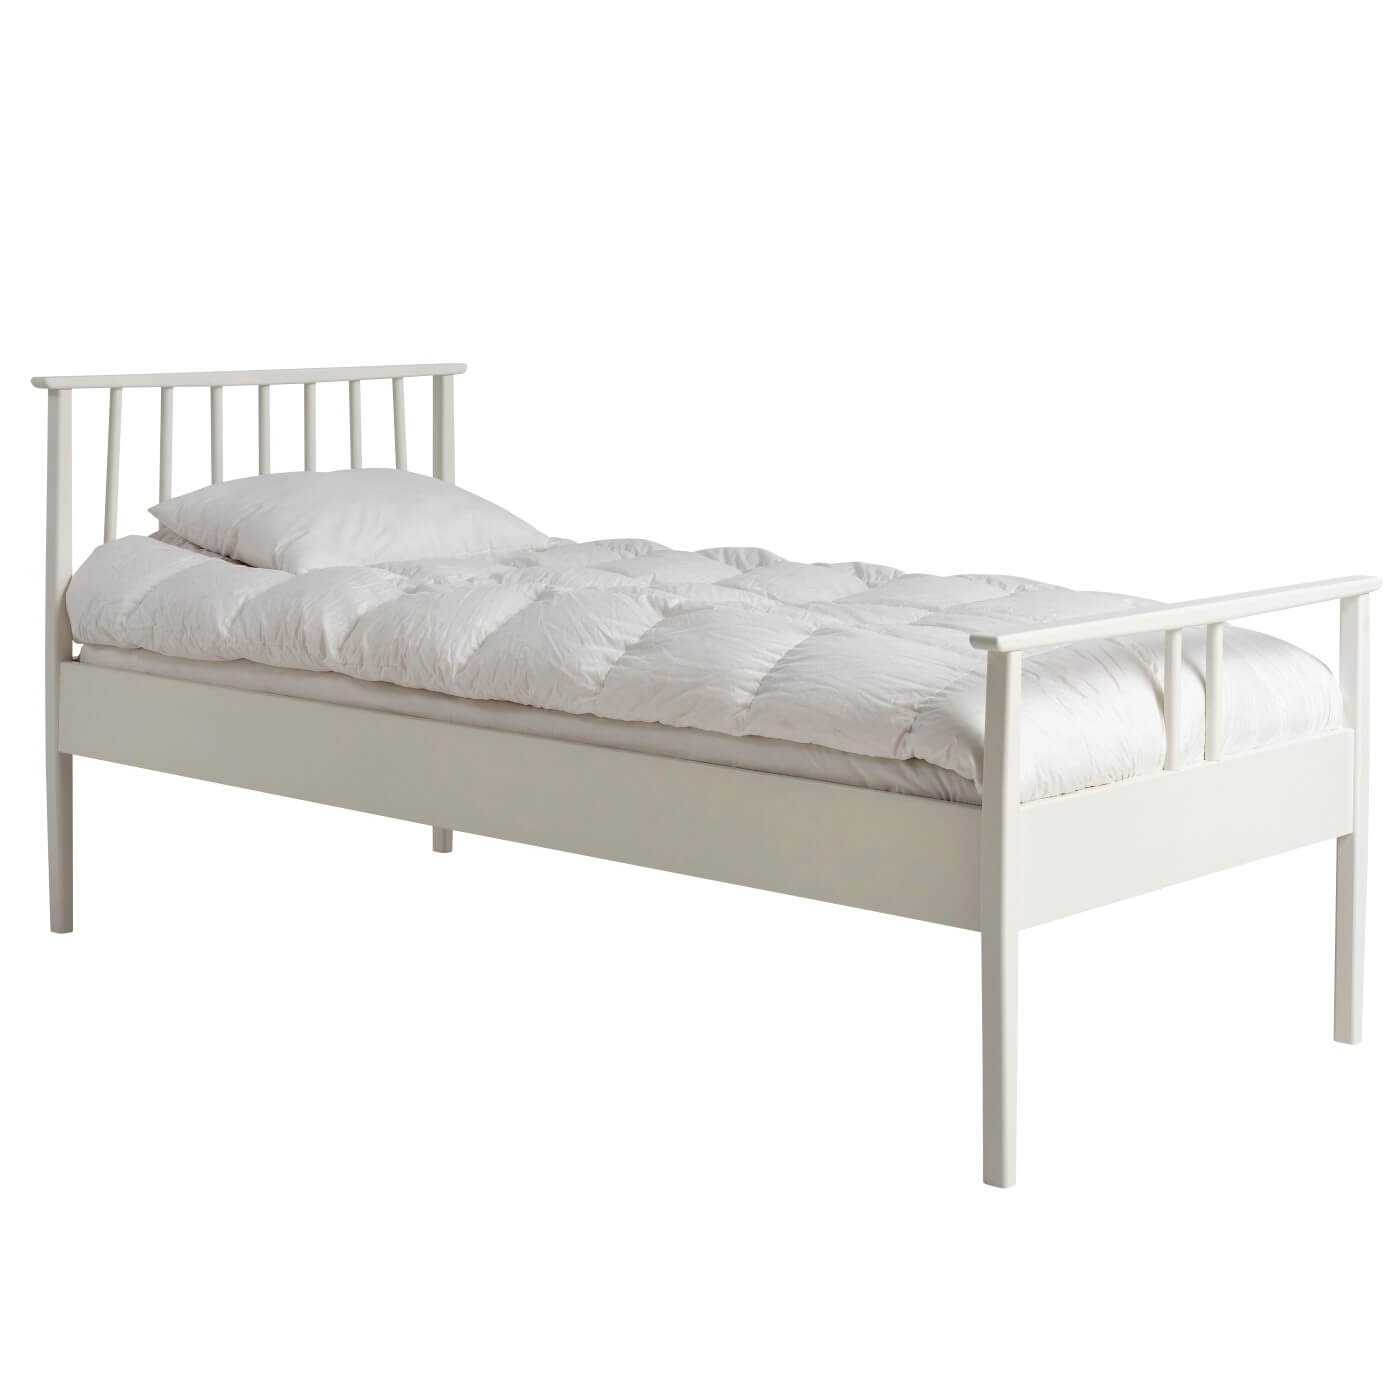 Łóżko drewniane białe 90x200 NOEL. Widoczne w całości łóżko z materacem. Na łóżku z pięknym białym ażurowym szczytem leżąca biała kołdra i poduszka. Skandynawski design